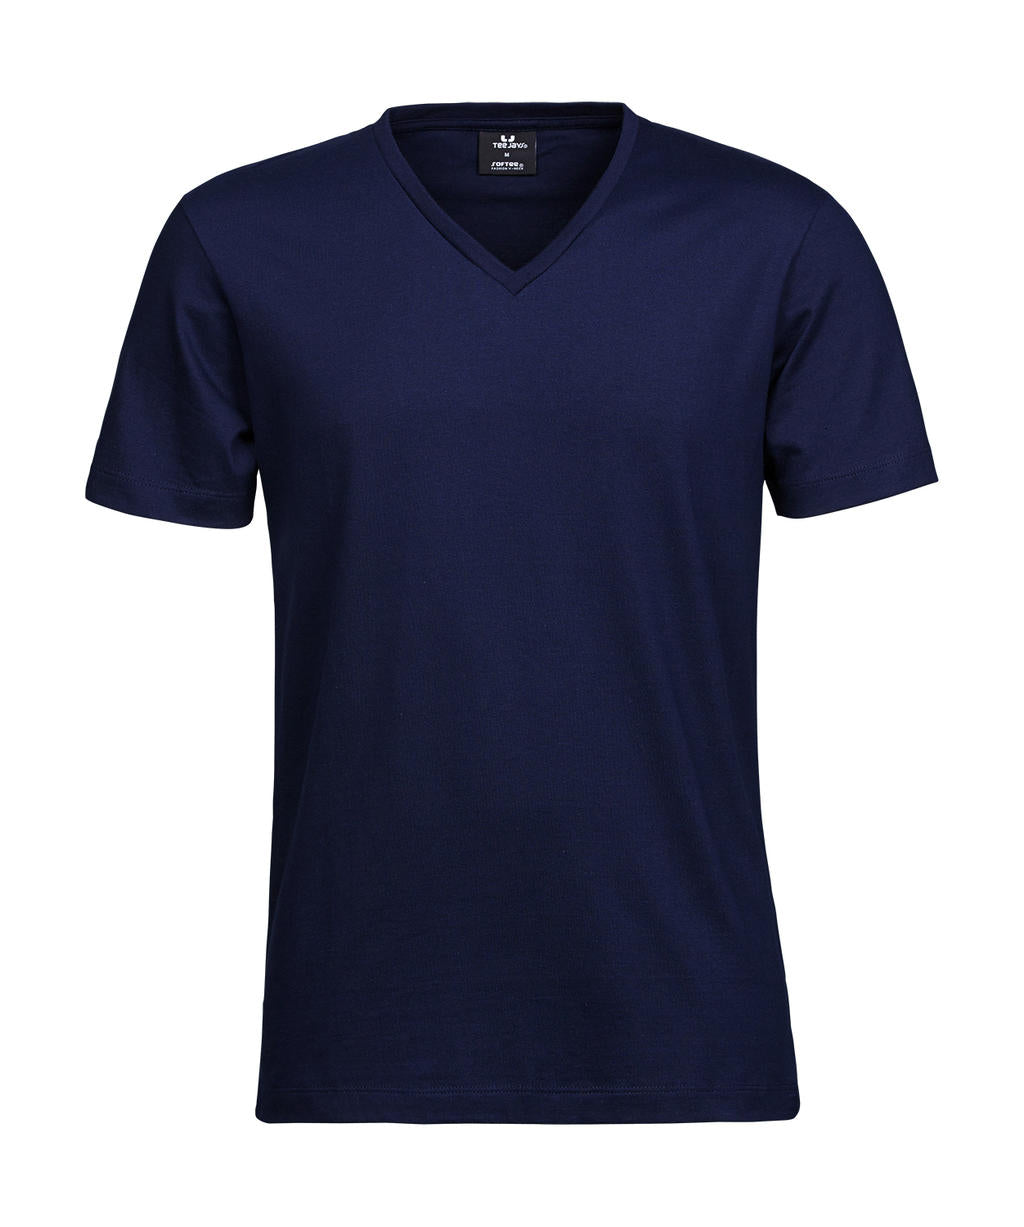 Tee Jays Herren T-Shirt Basic V-Neck Shirt Basic V-Ausschnitt